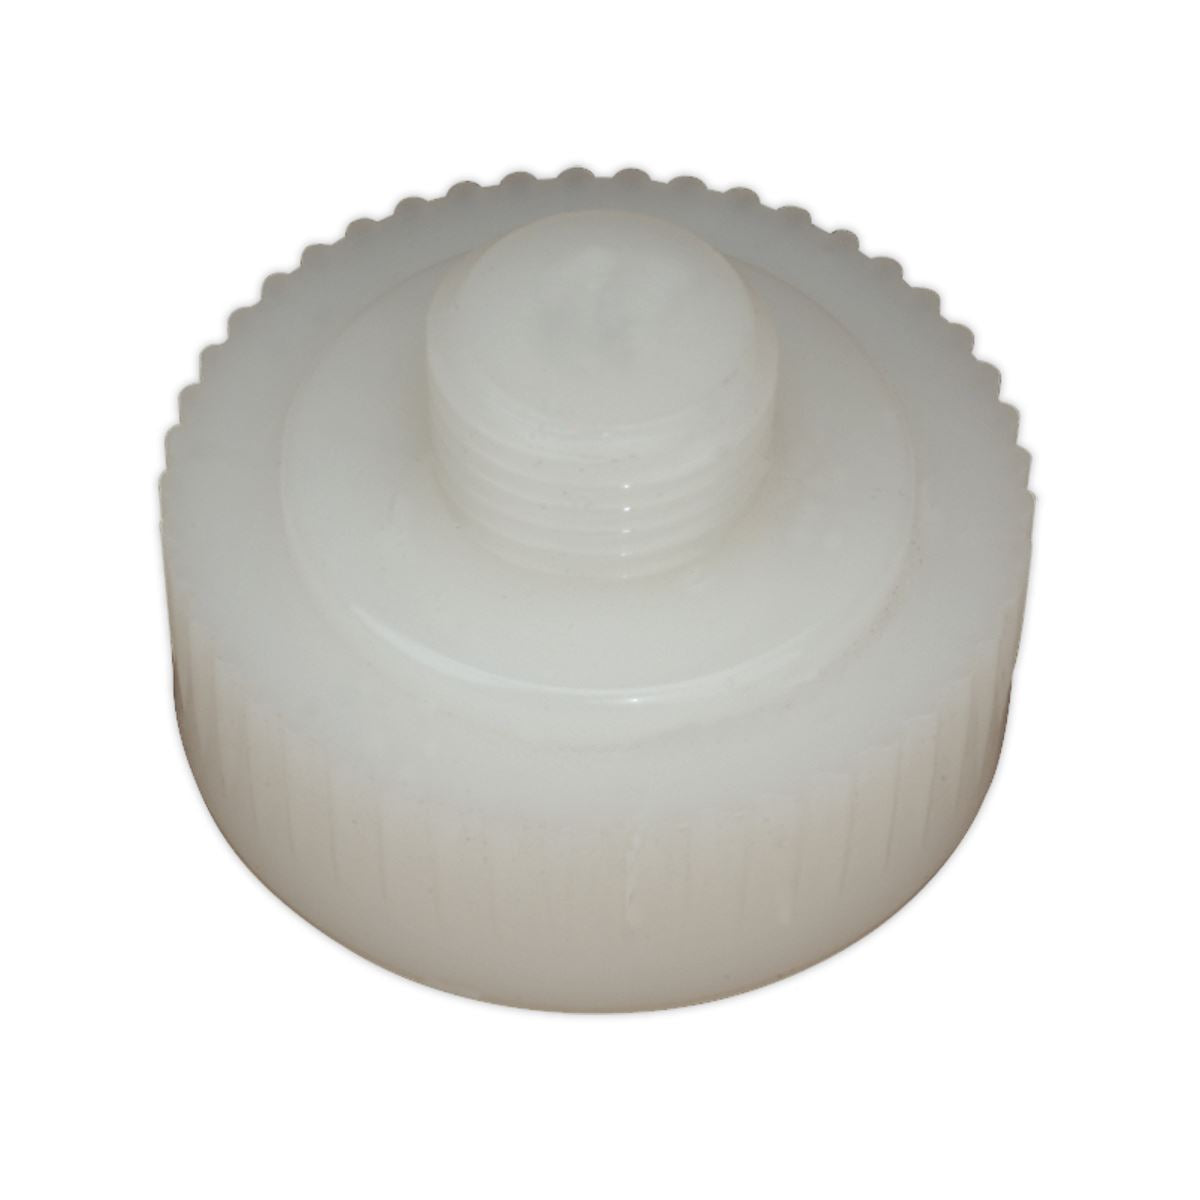 Sealey Premier Nylon Hammer Face, Hard/White for DBHN20 & NFH175